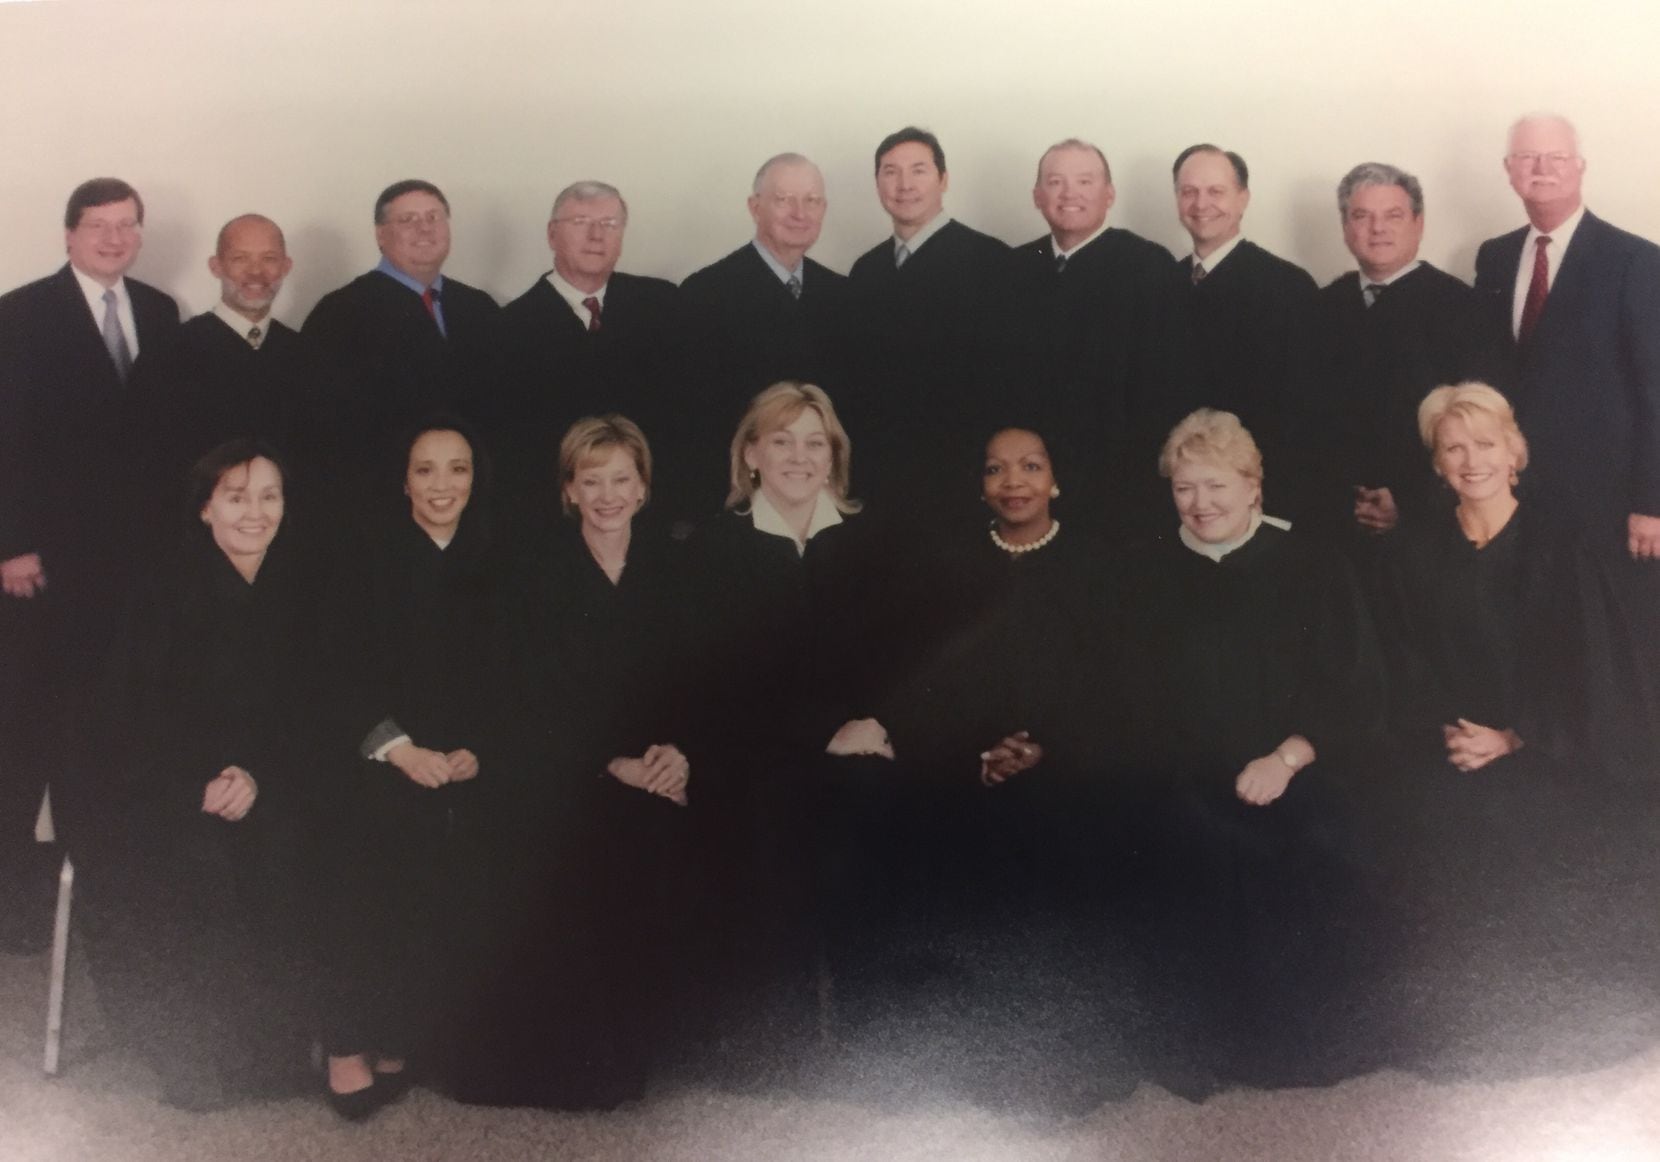 Dallas County's felony court judges circa 2005. (Courtesy photo)